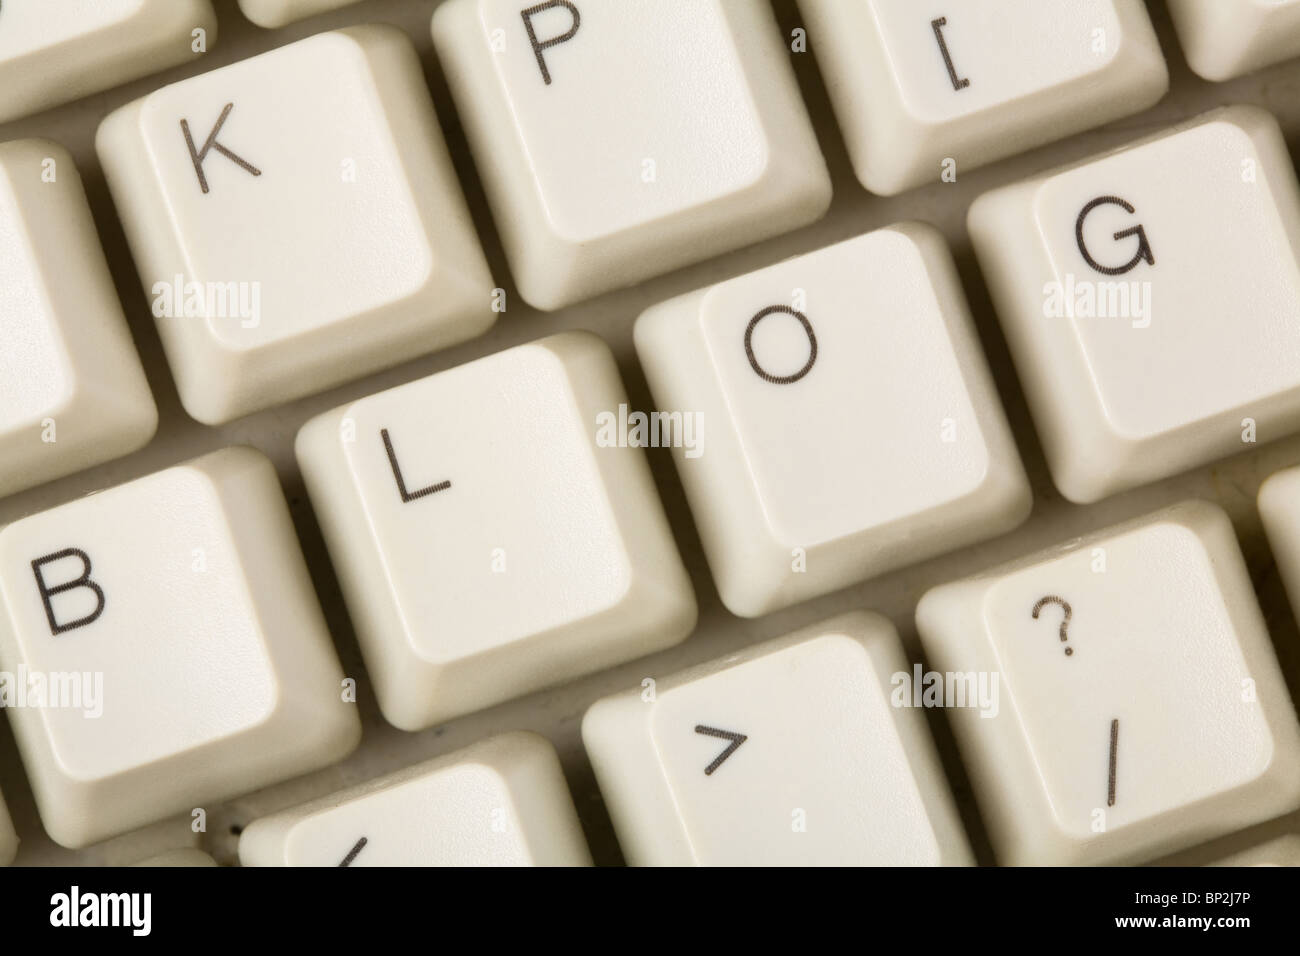 Blog y teclado de ordenador, internet diario concepto Foto de stock